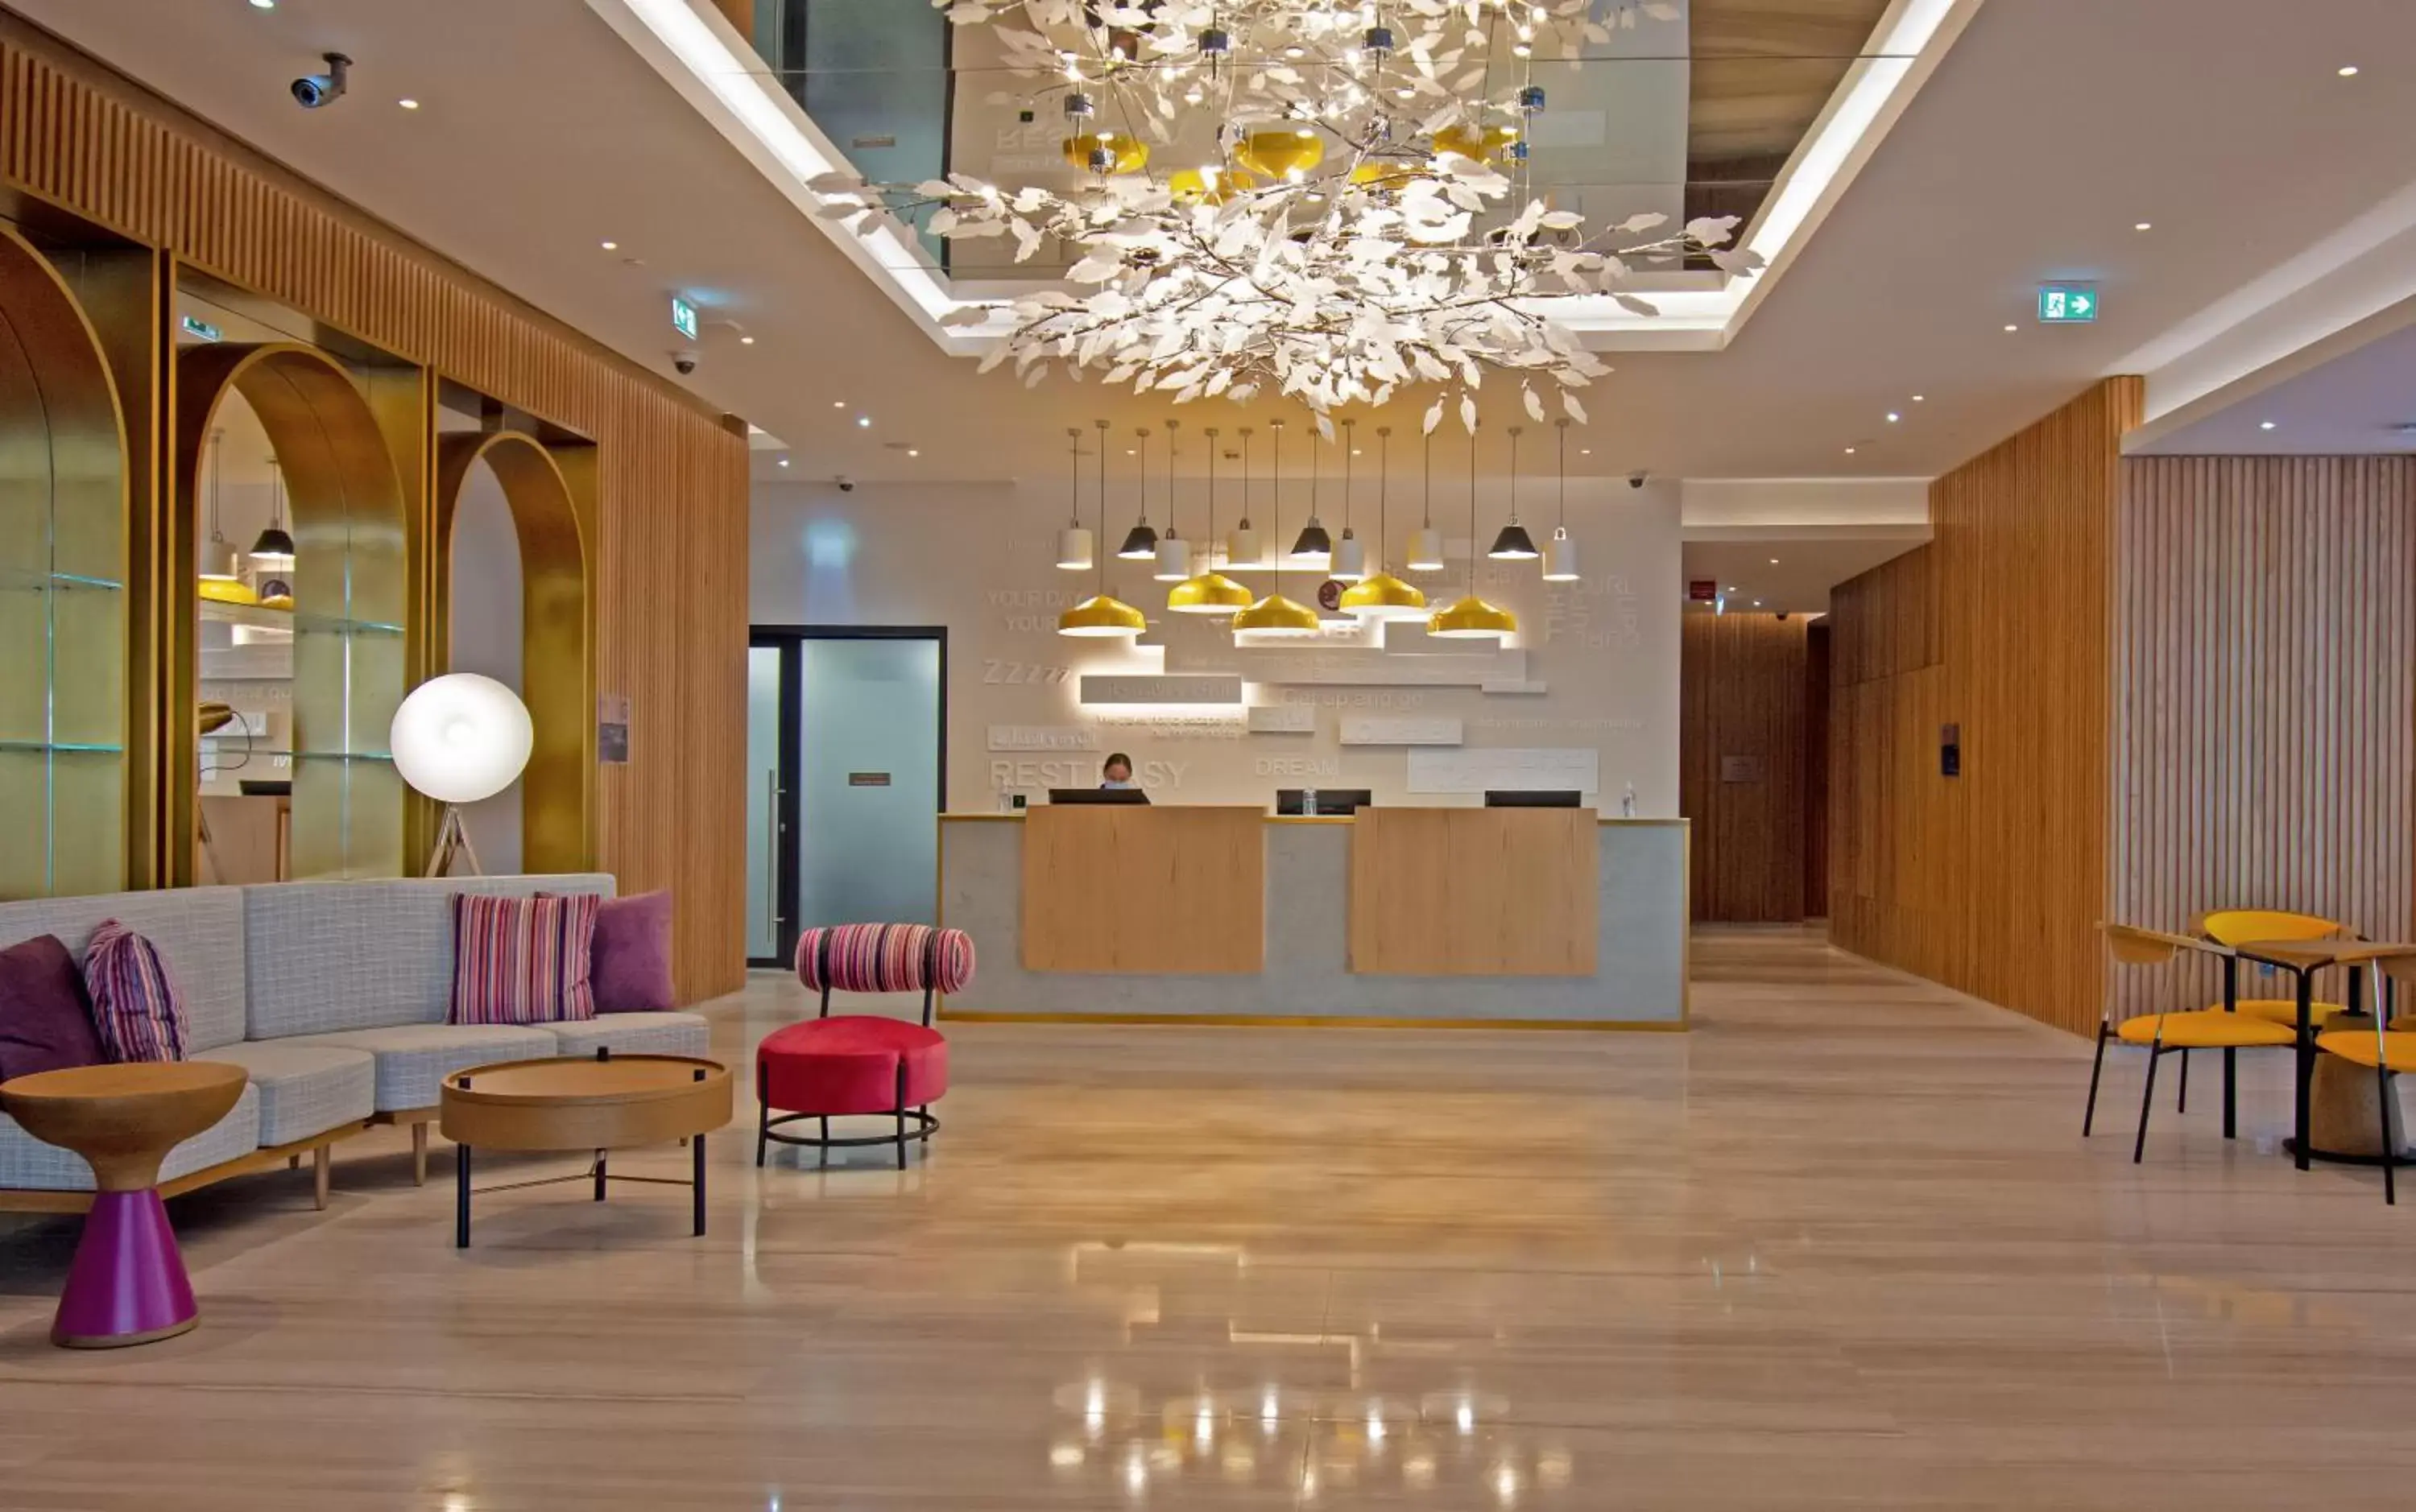 Lobby or reception, Lobby/Reception in Premier Inn Dubai Barsha Heights